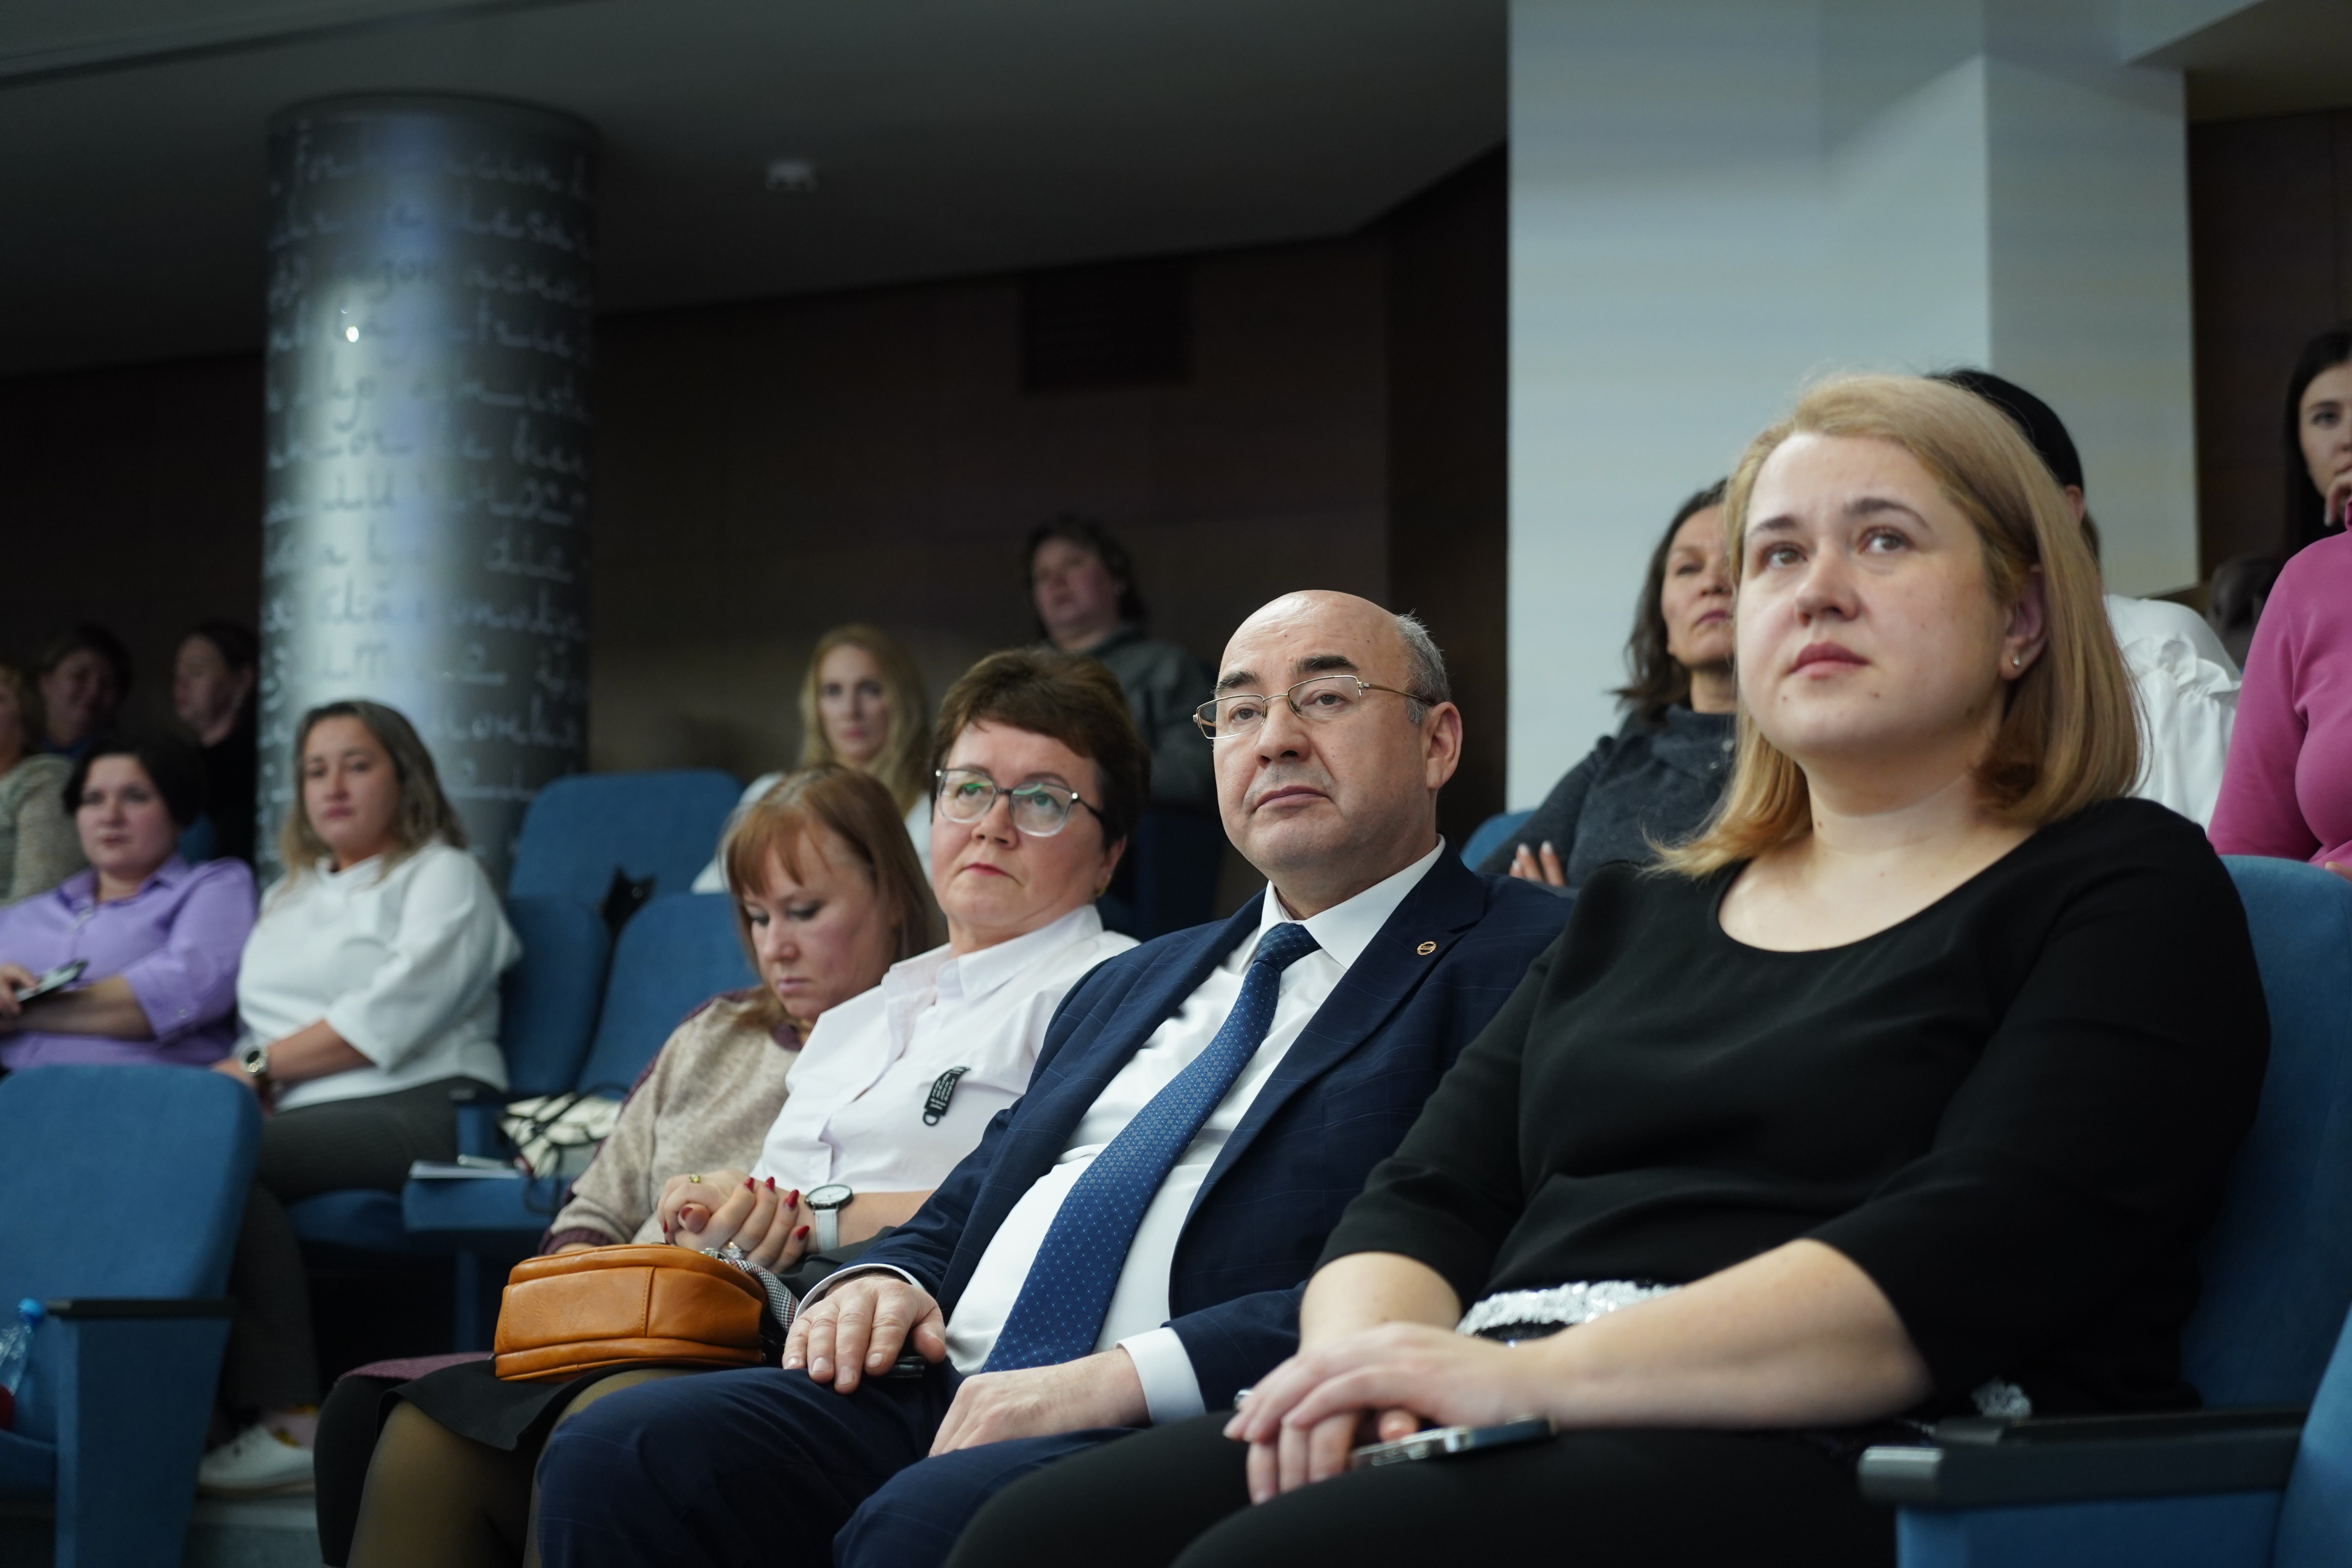 В ИФМК дан старт Казанскому международному лингвистическому саммиту